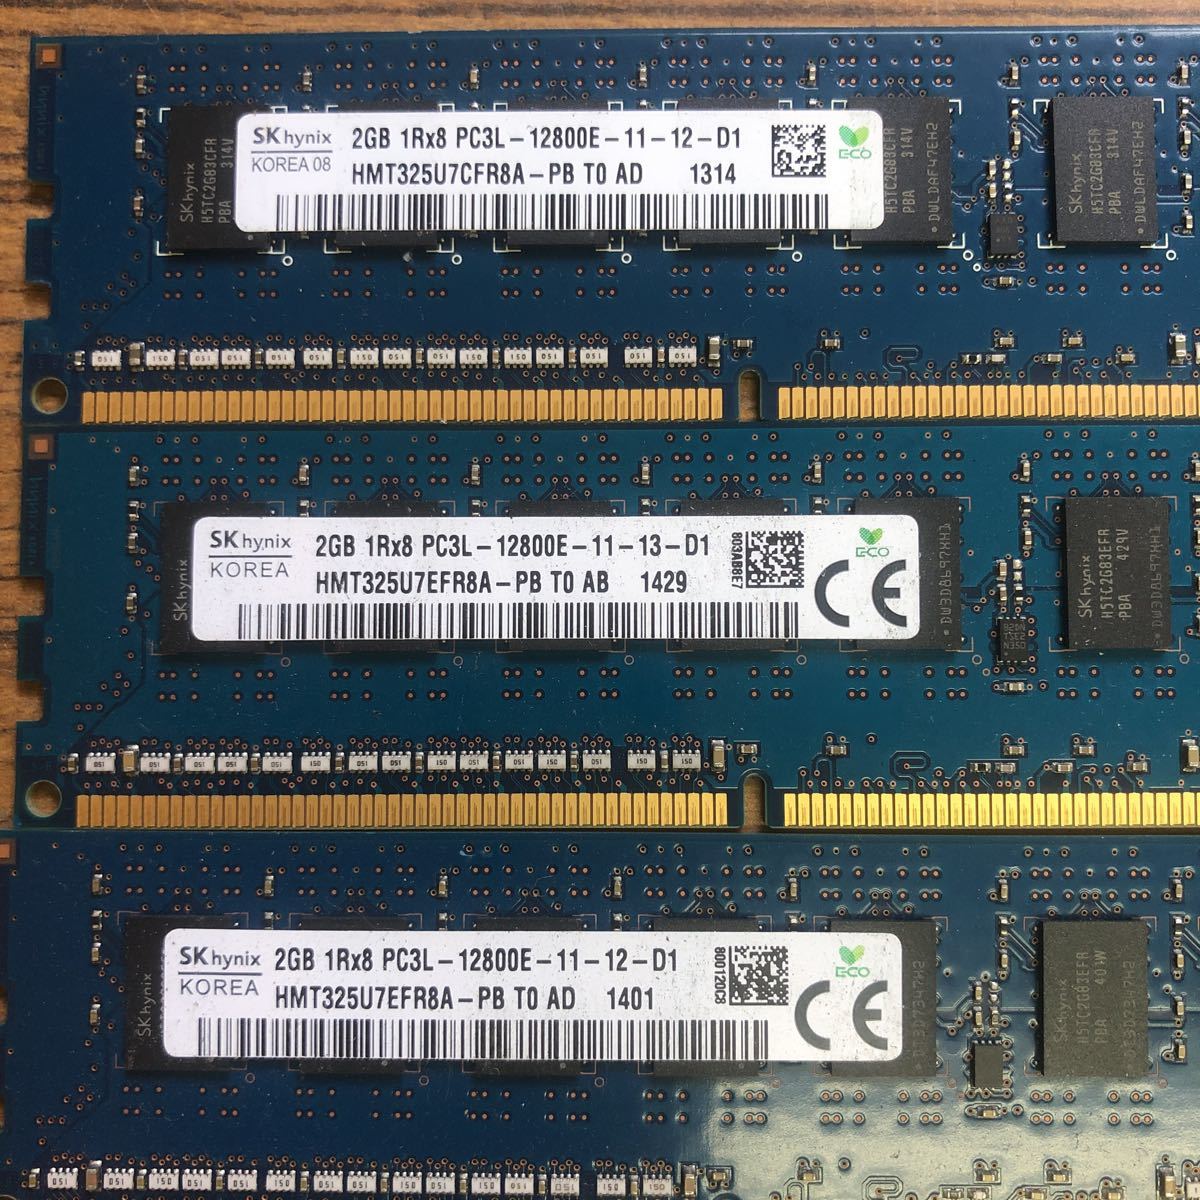  сервер для SKHYNIX 2GB 1Rx8 PC3L-12800E 6 шт. комплект 